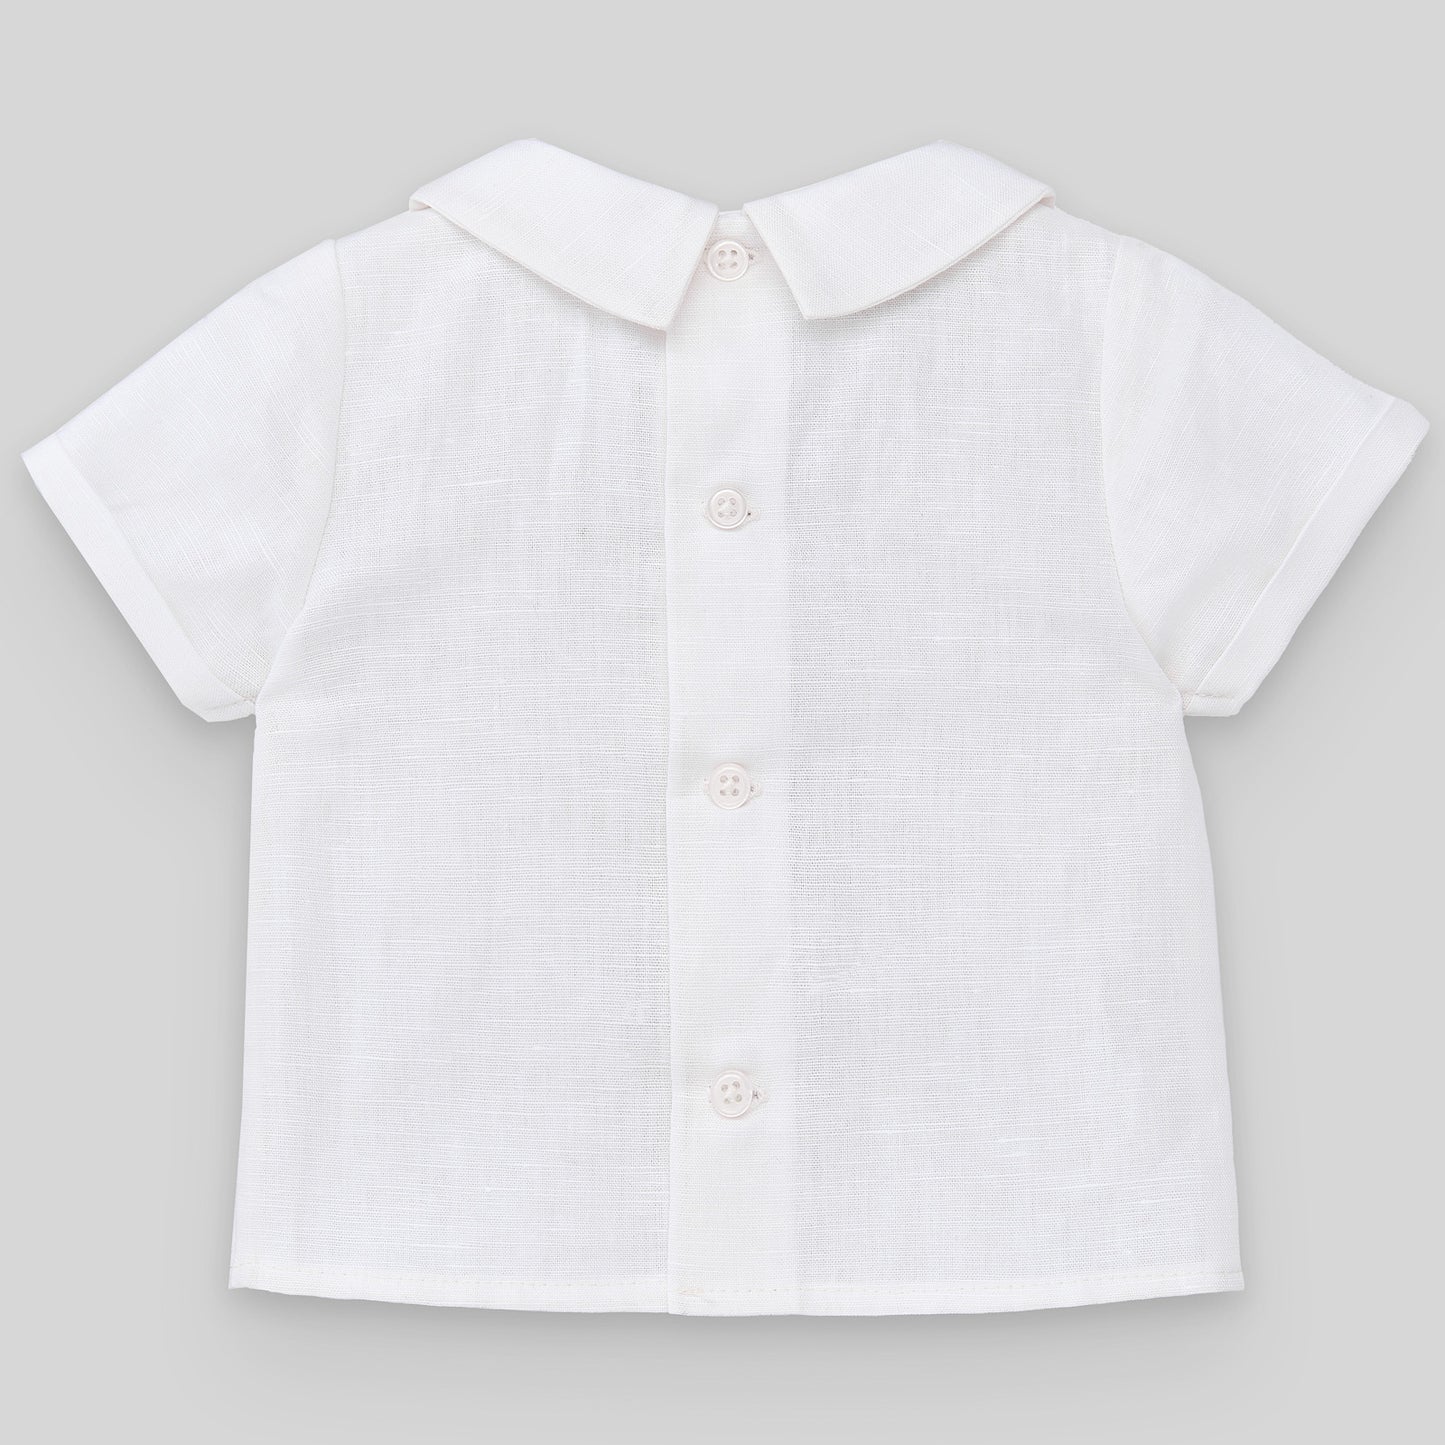 PAZ RODRIGUEZ 3-piece Ceremony Suit Blouse+Shorts+Cardigan Linen Cotton Blend White-Sky Blue